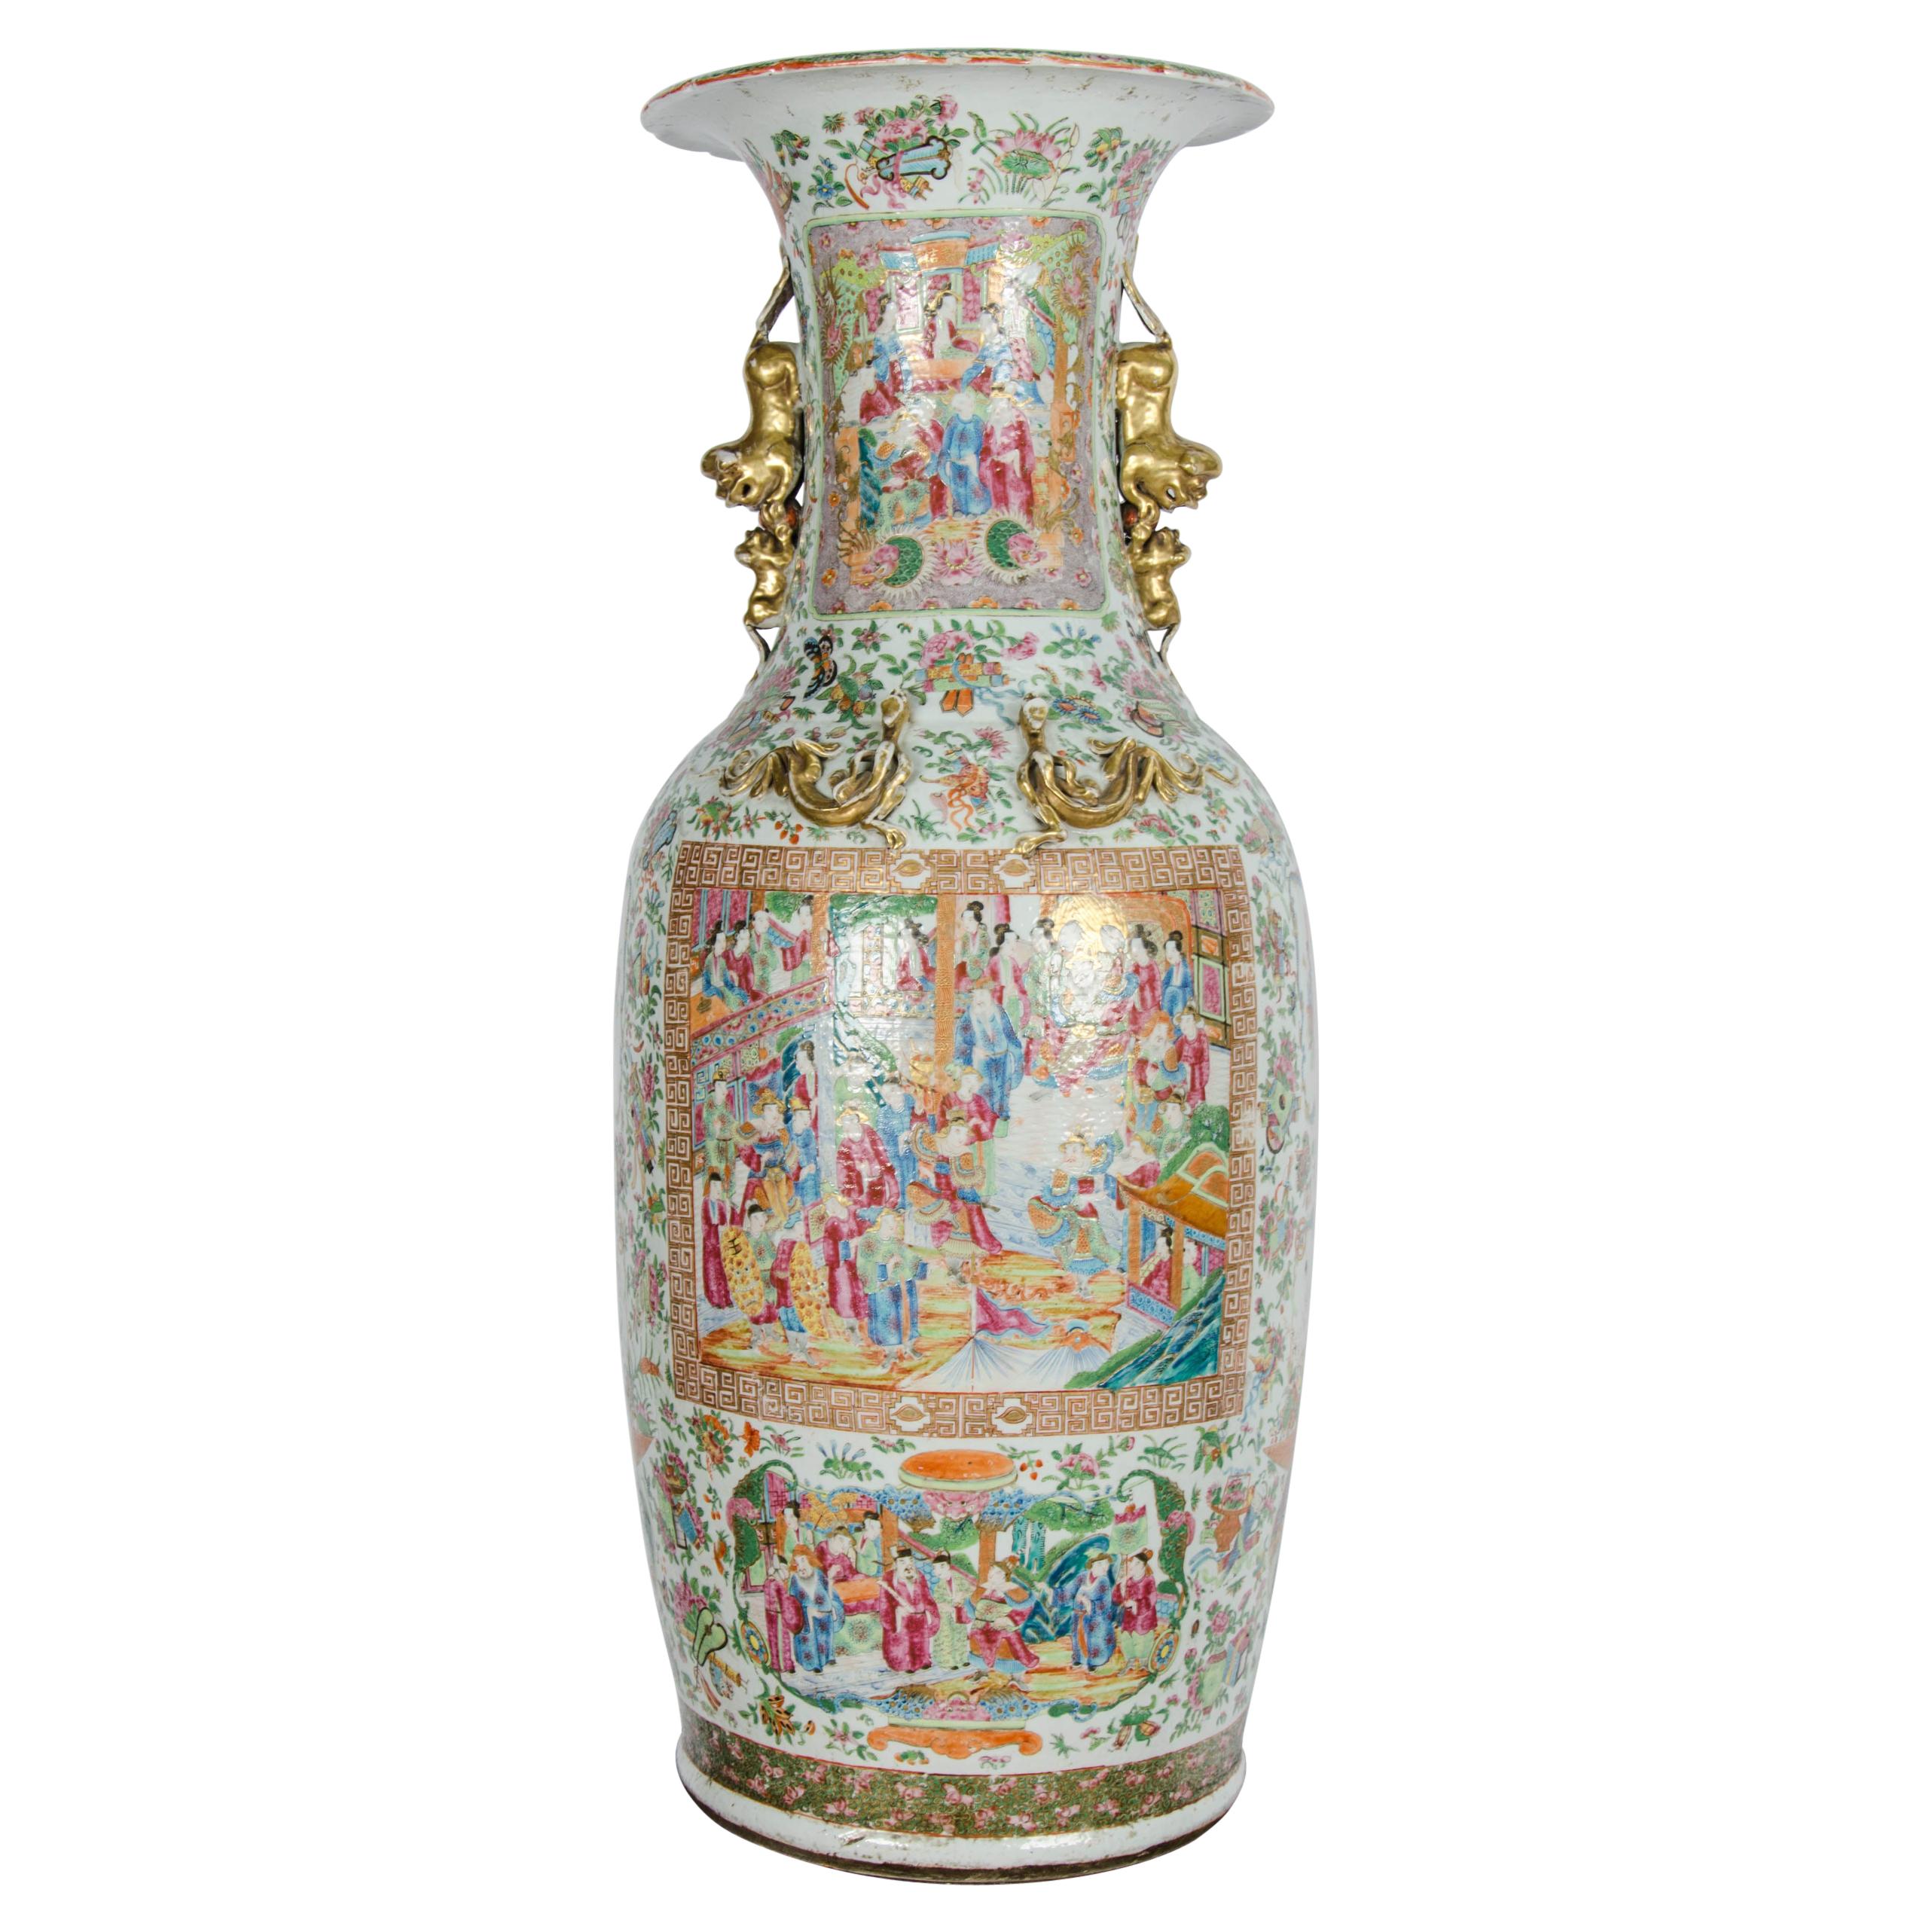 Grand vase à médaillons de roses chinois du 19ème siècle sur pied